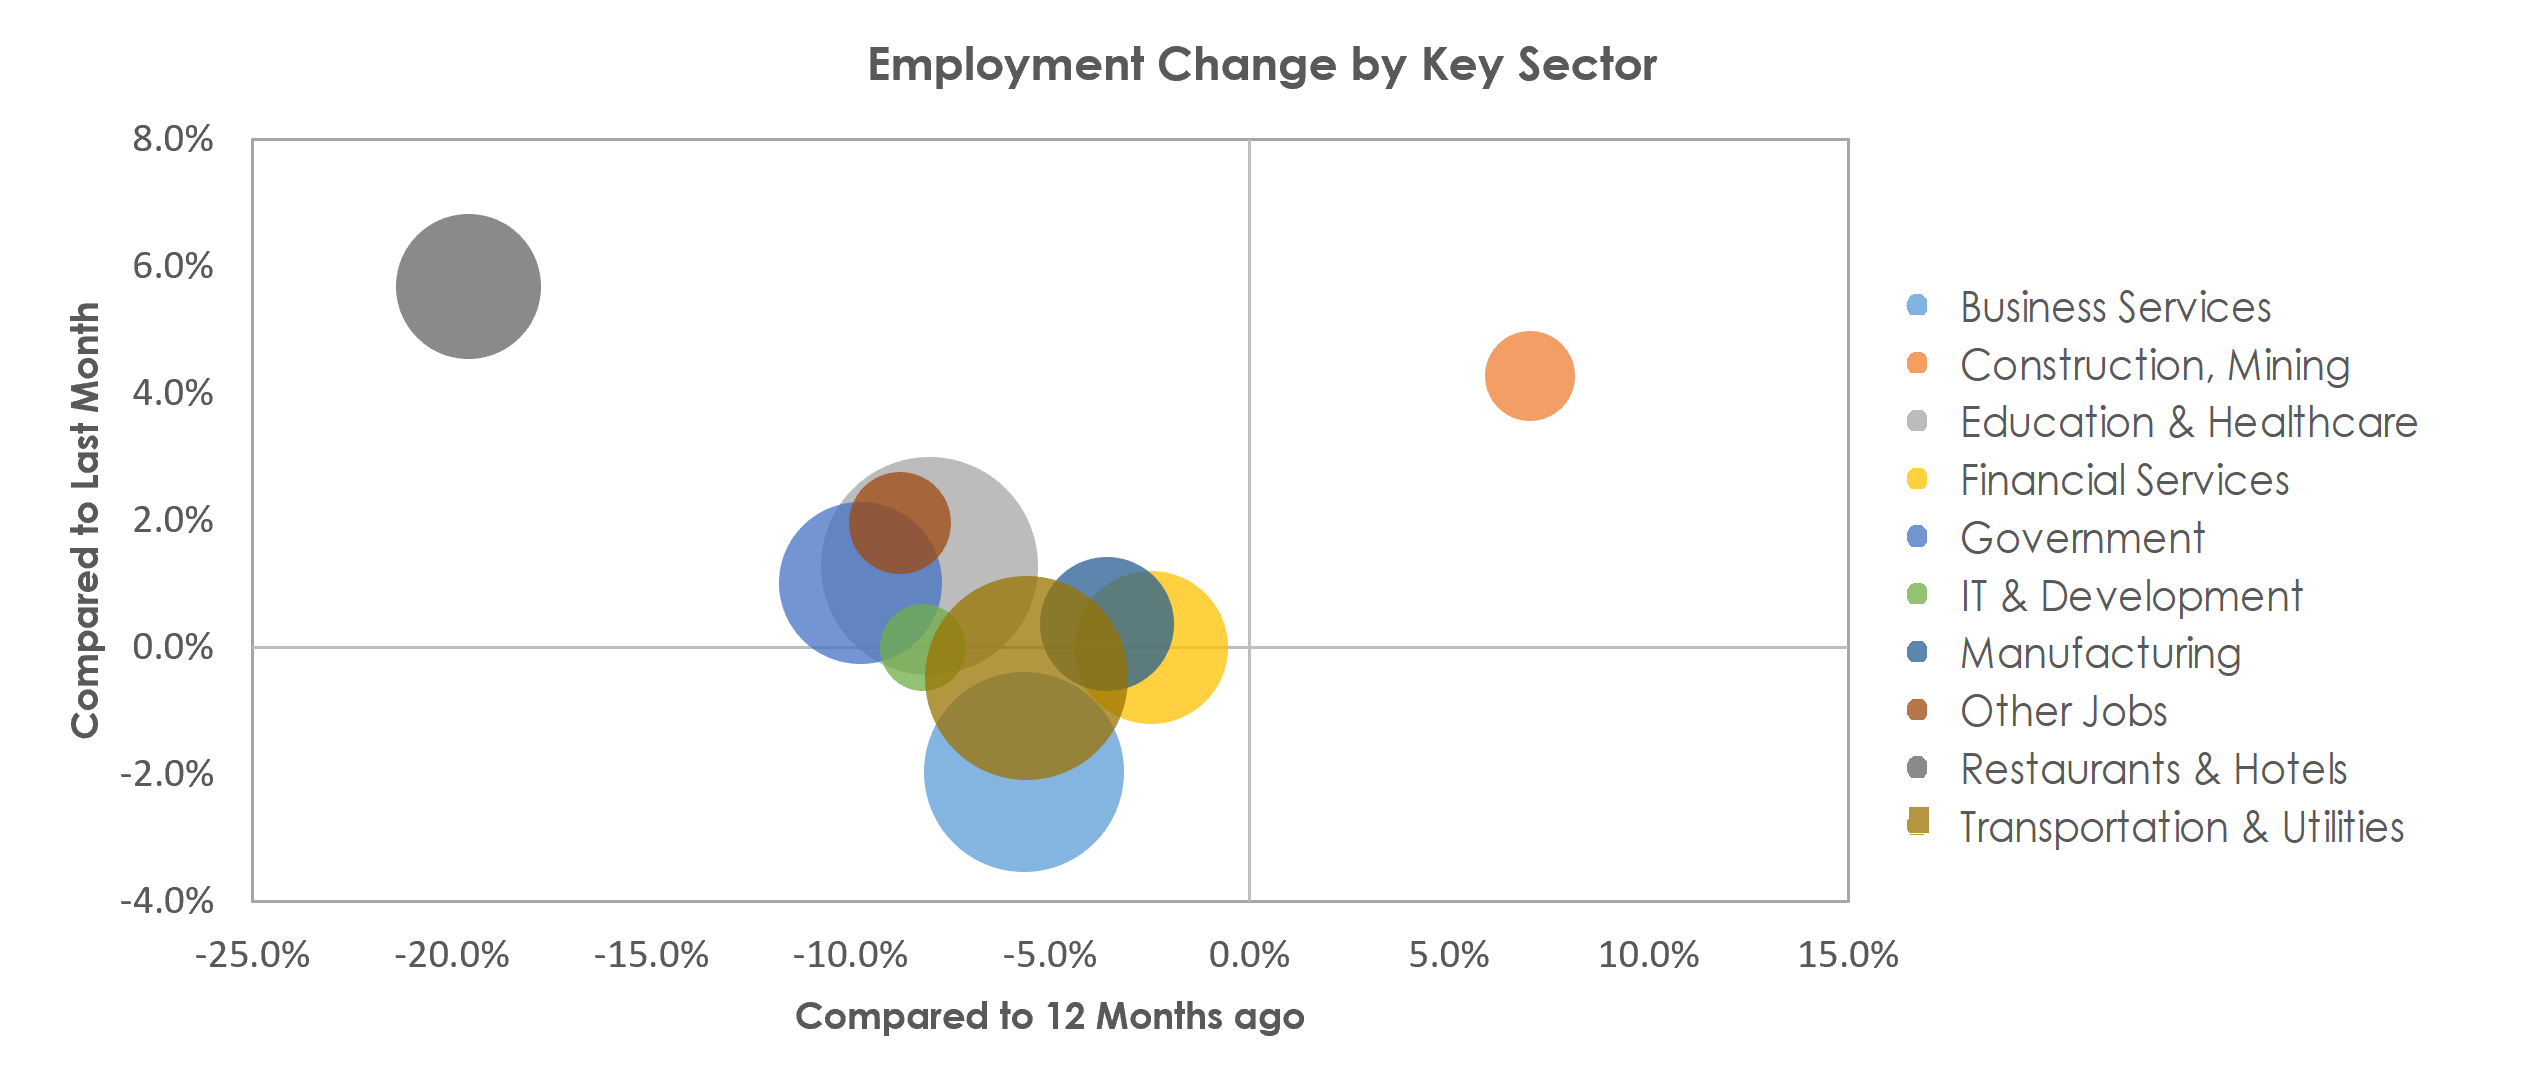 Bridgeport-Stamford-Norwalk, CT Unemployment by Industry March 2021